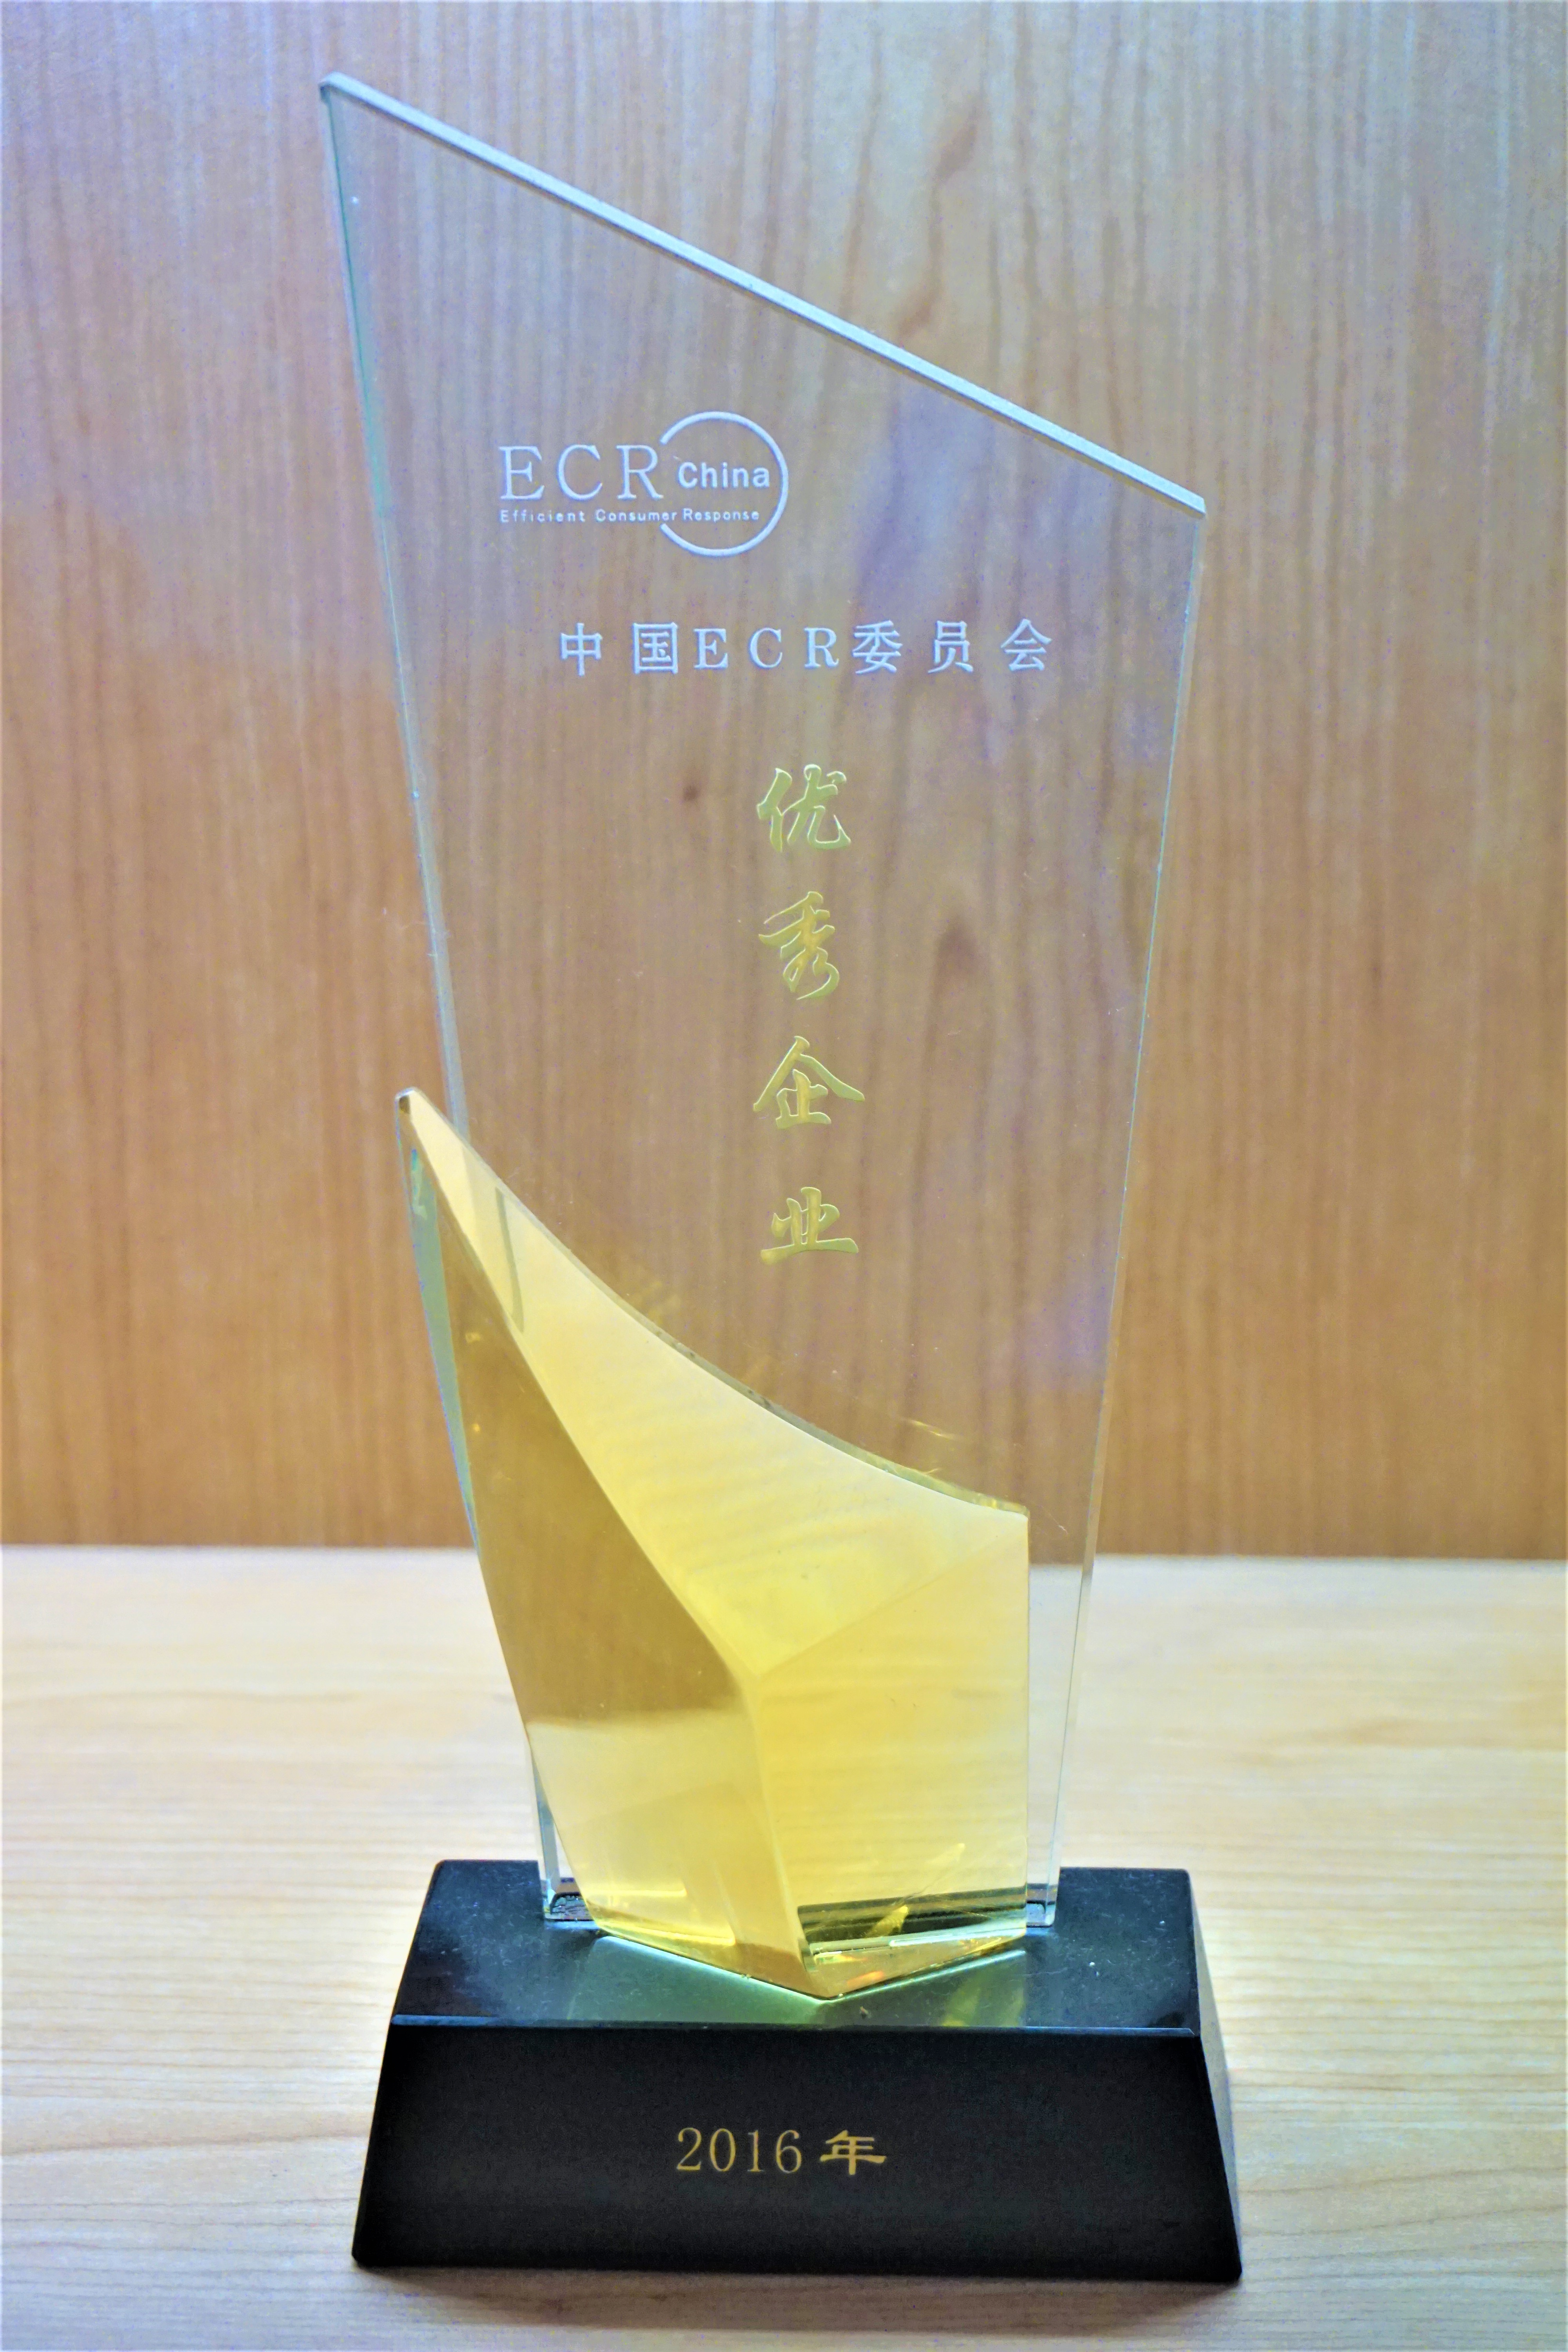 2016优秀企业-ECR China.JPG